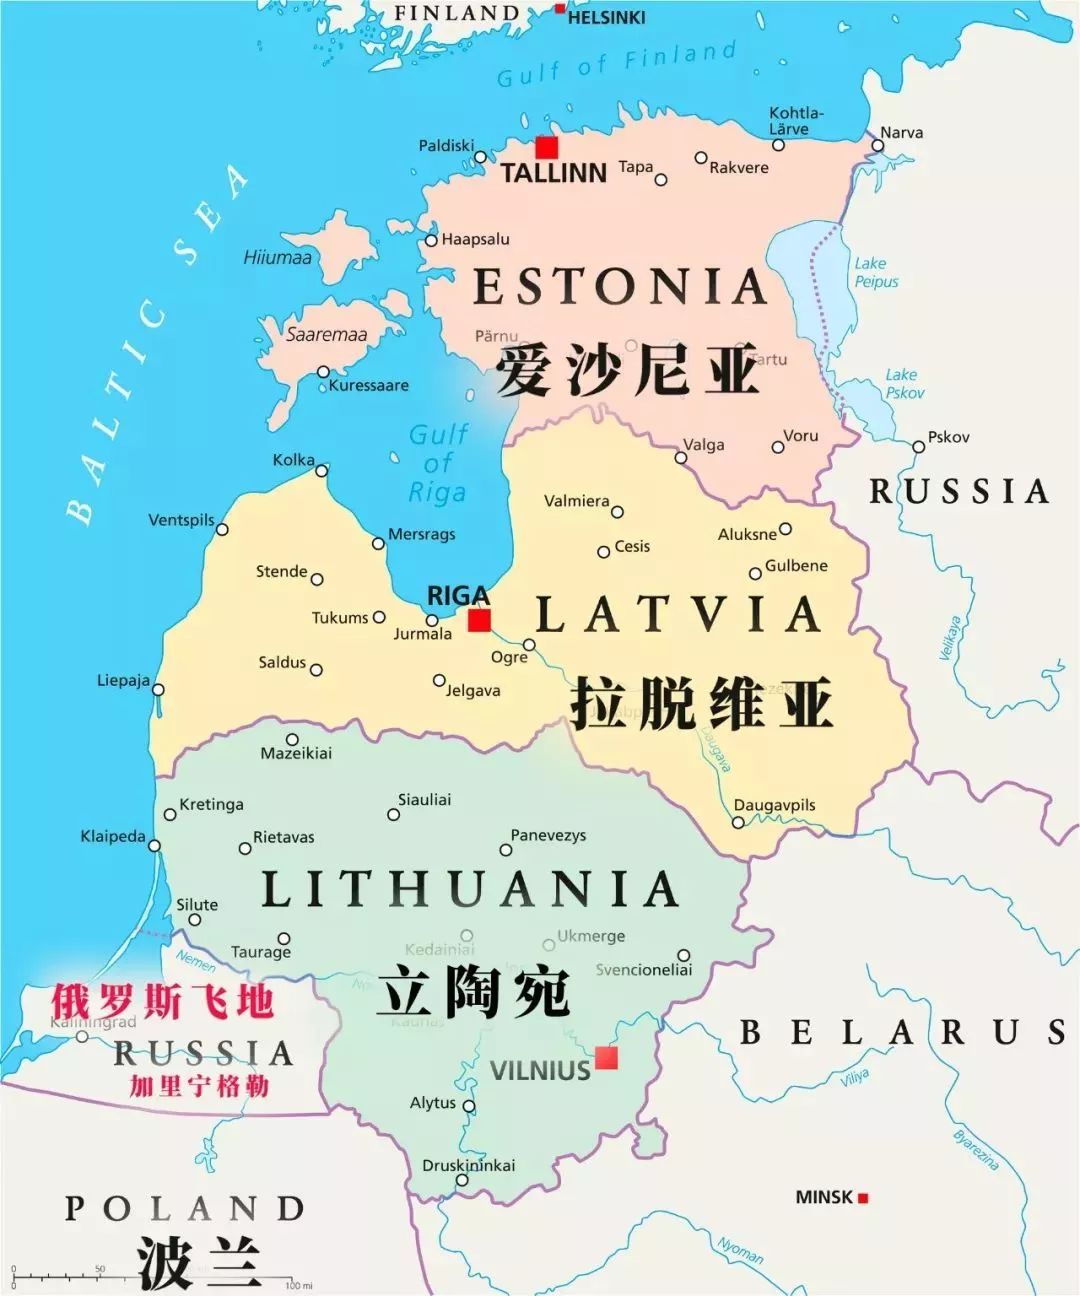 波罗的海三国(立陶宛,拉脱维亚,爱沙尼亚)爱沙尼亚语言不属于立陶宛